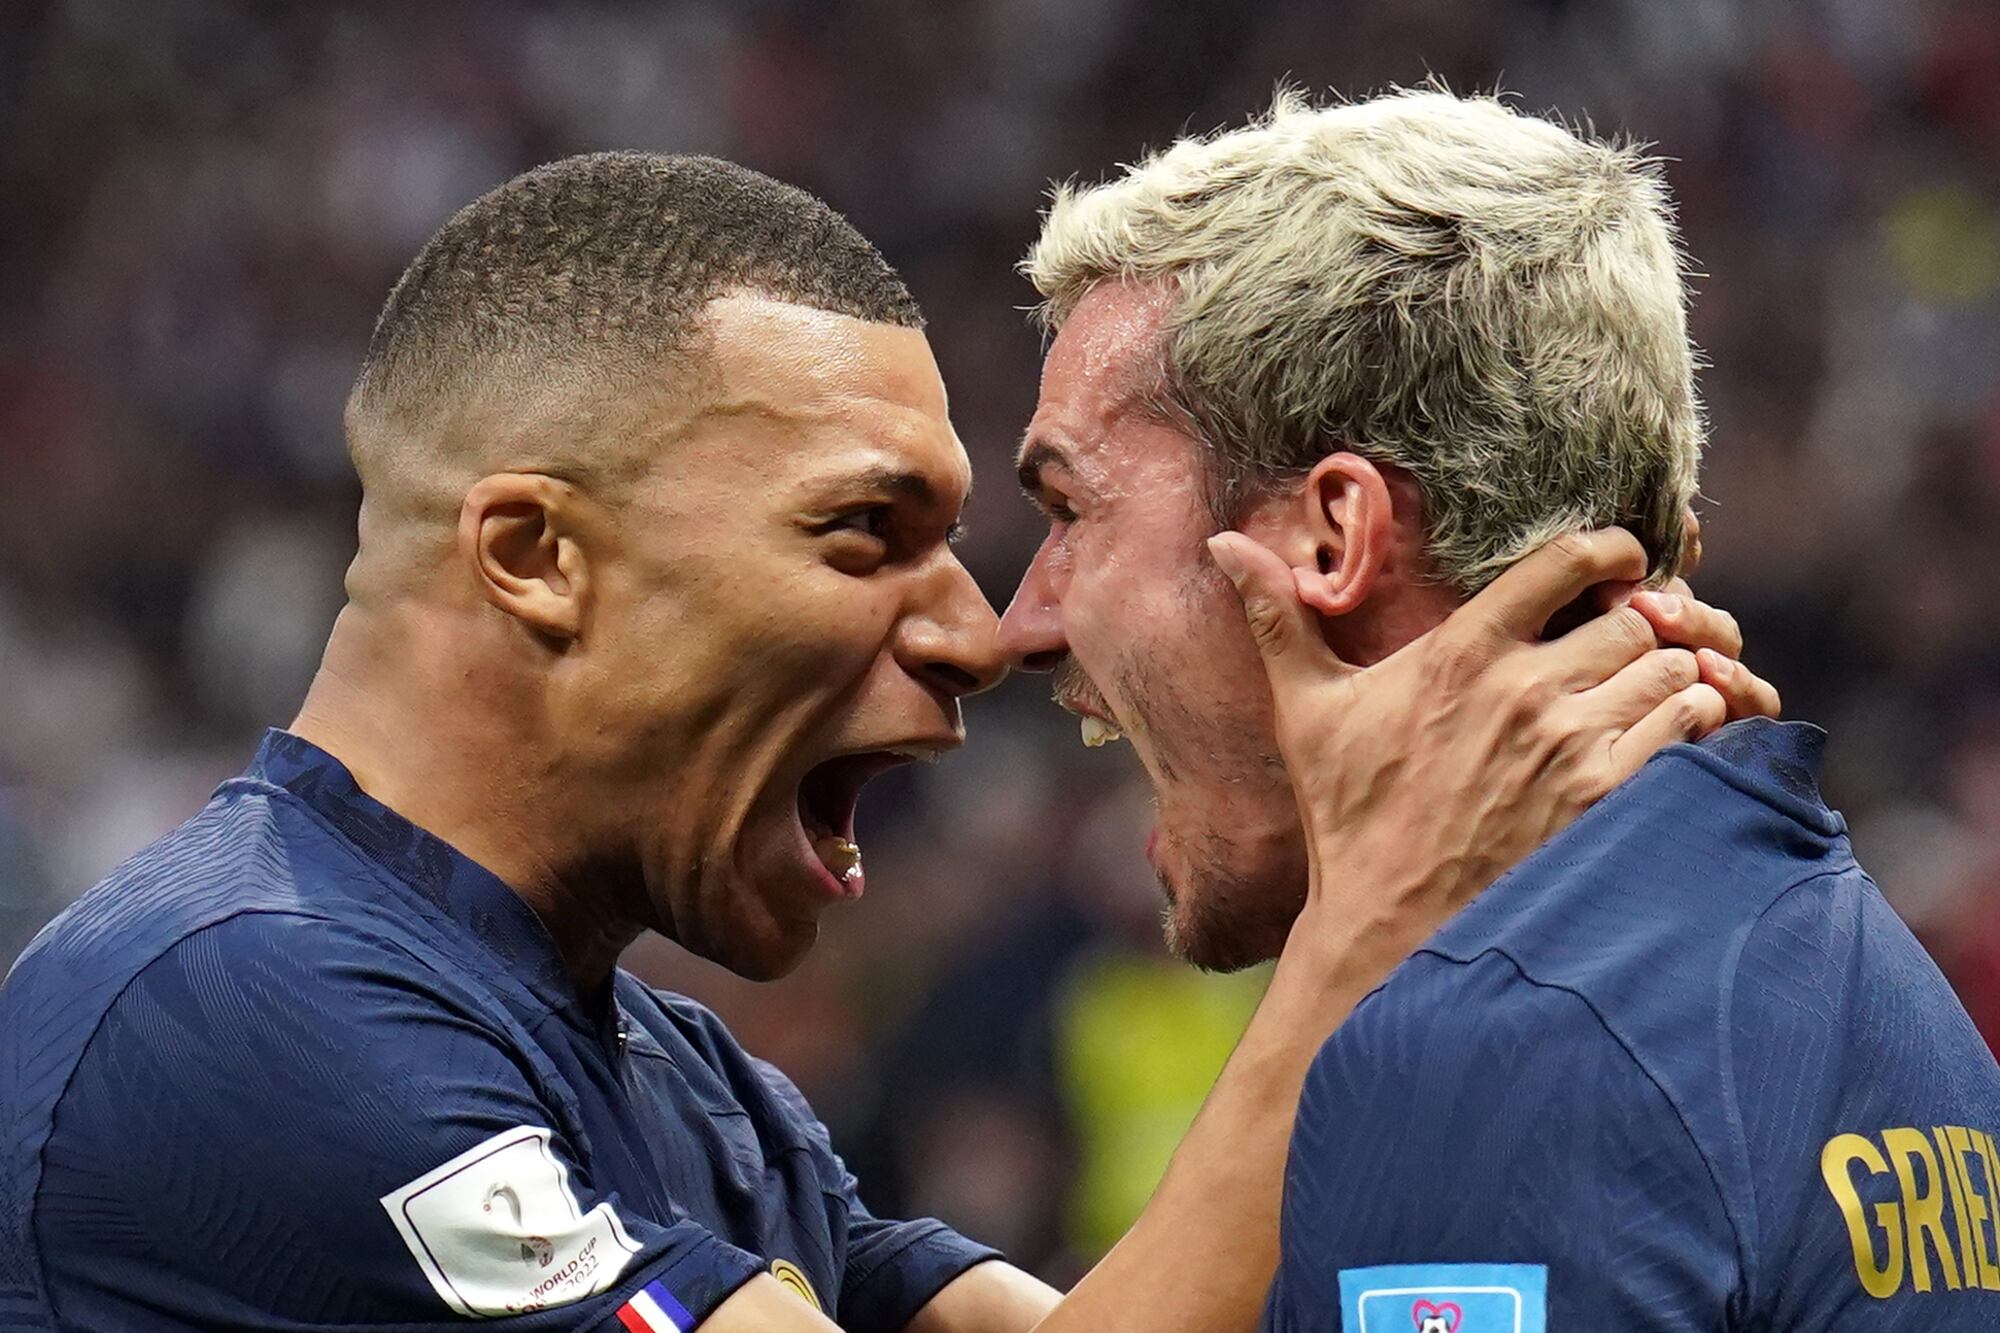 Kylian Mbappé y Antoine Griezmann compartirían la delantera del seleccionado olímpico francés en París 2024; Giroud se les podría haber sumado, pero no podrá hacerlo tras confirmarse su pase a la MLS, donde debutará en agosto